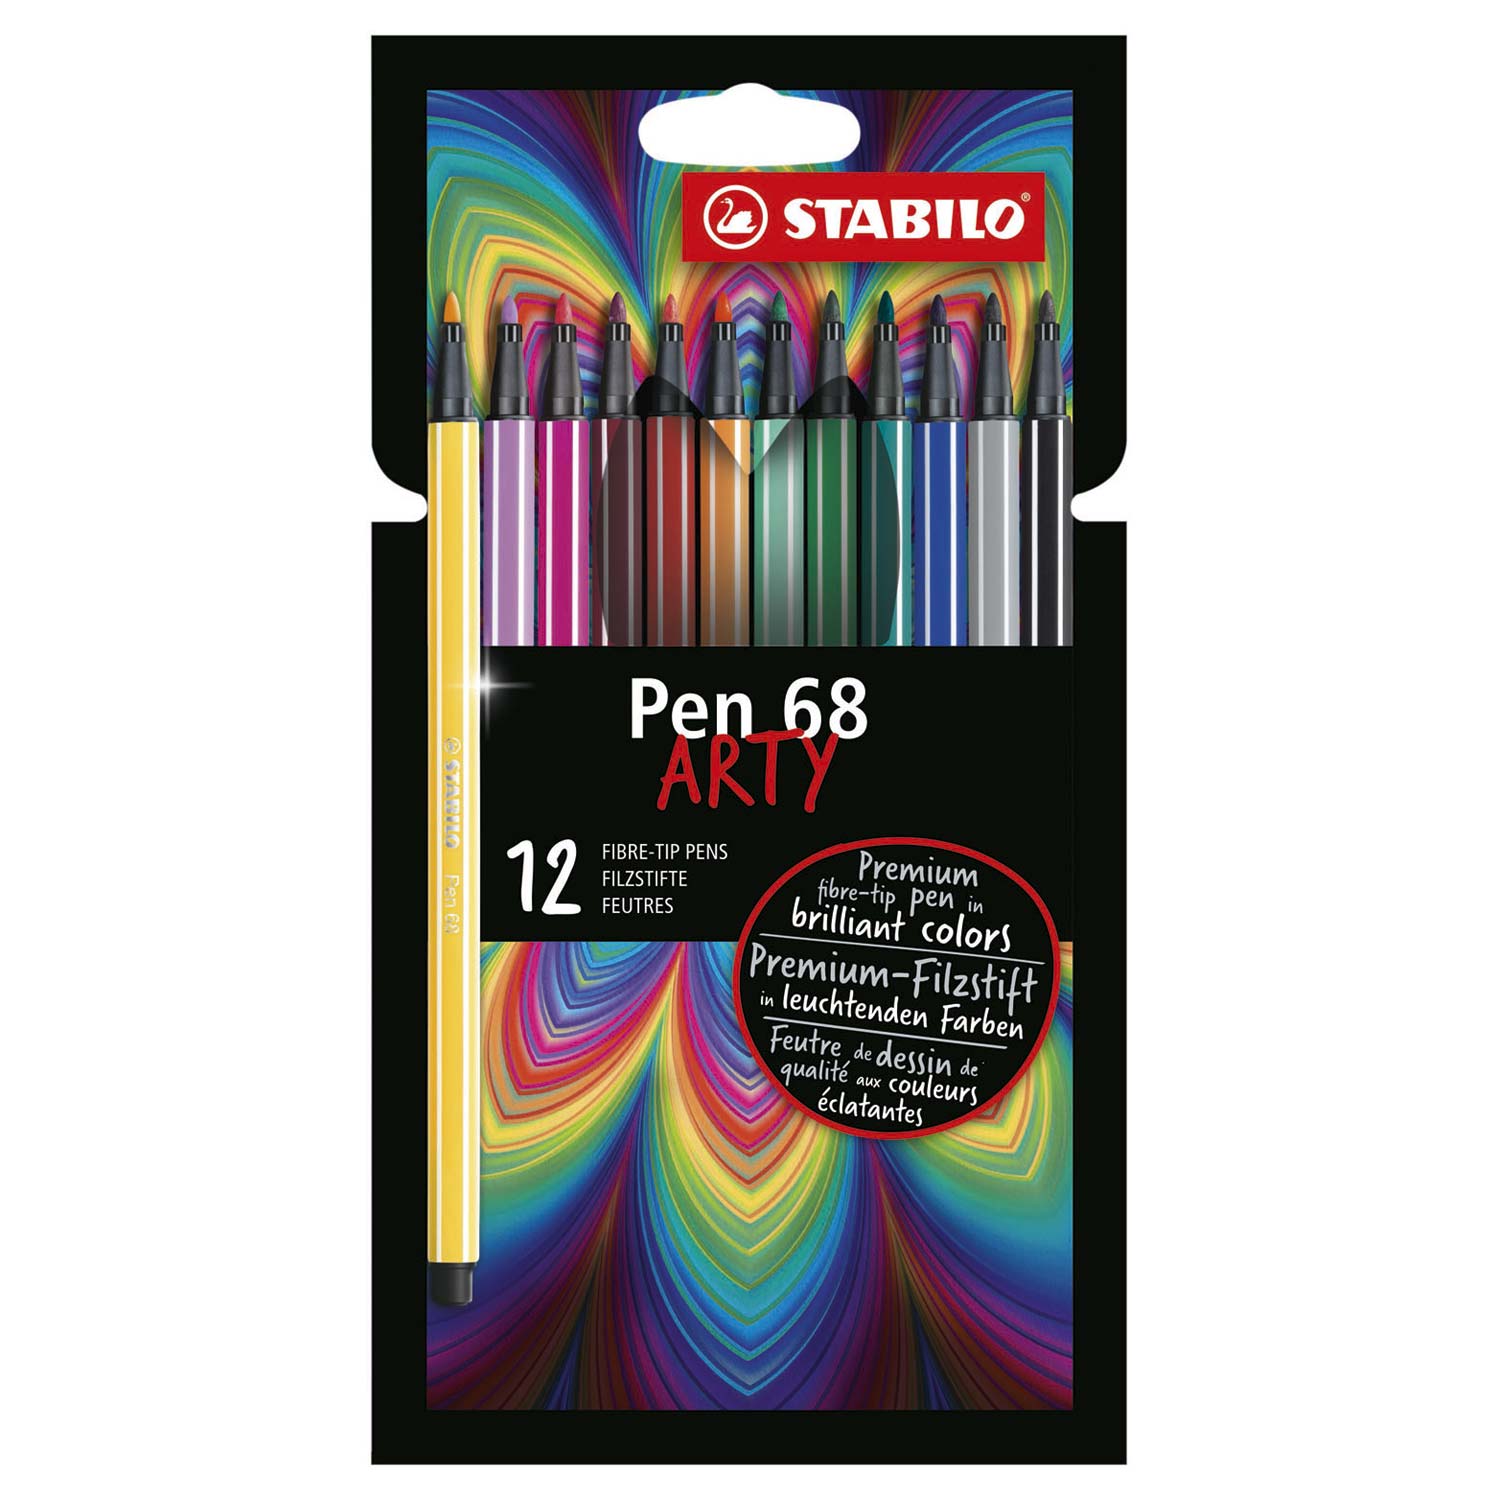 luisteraar Zuidoost moeilijk STABILO Pen 68 ARTY felt-tip pens, 12 pieces. | Thimble Toys